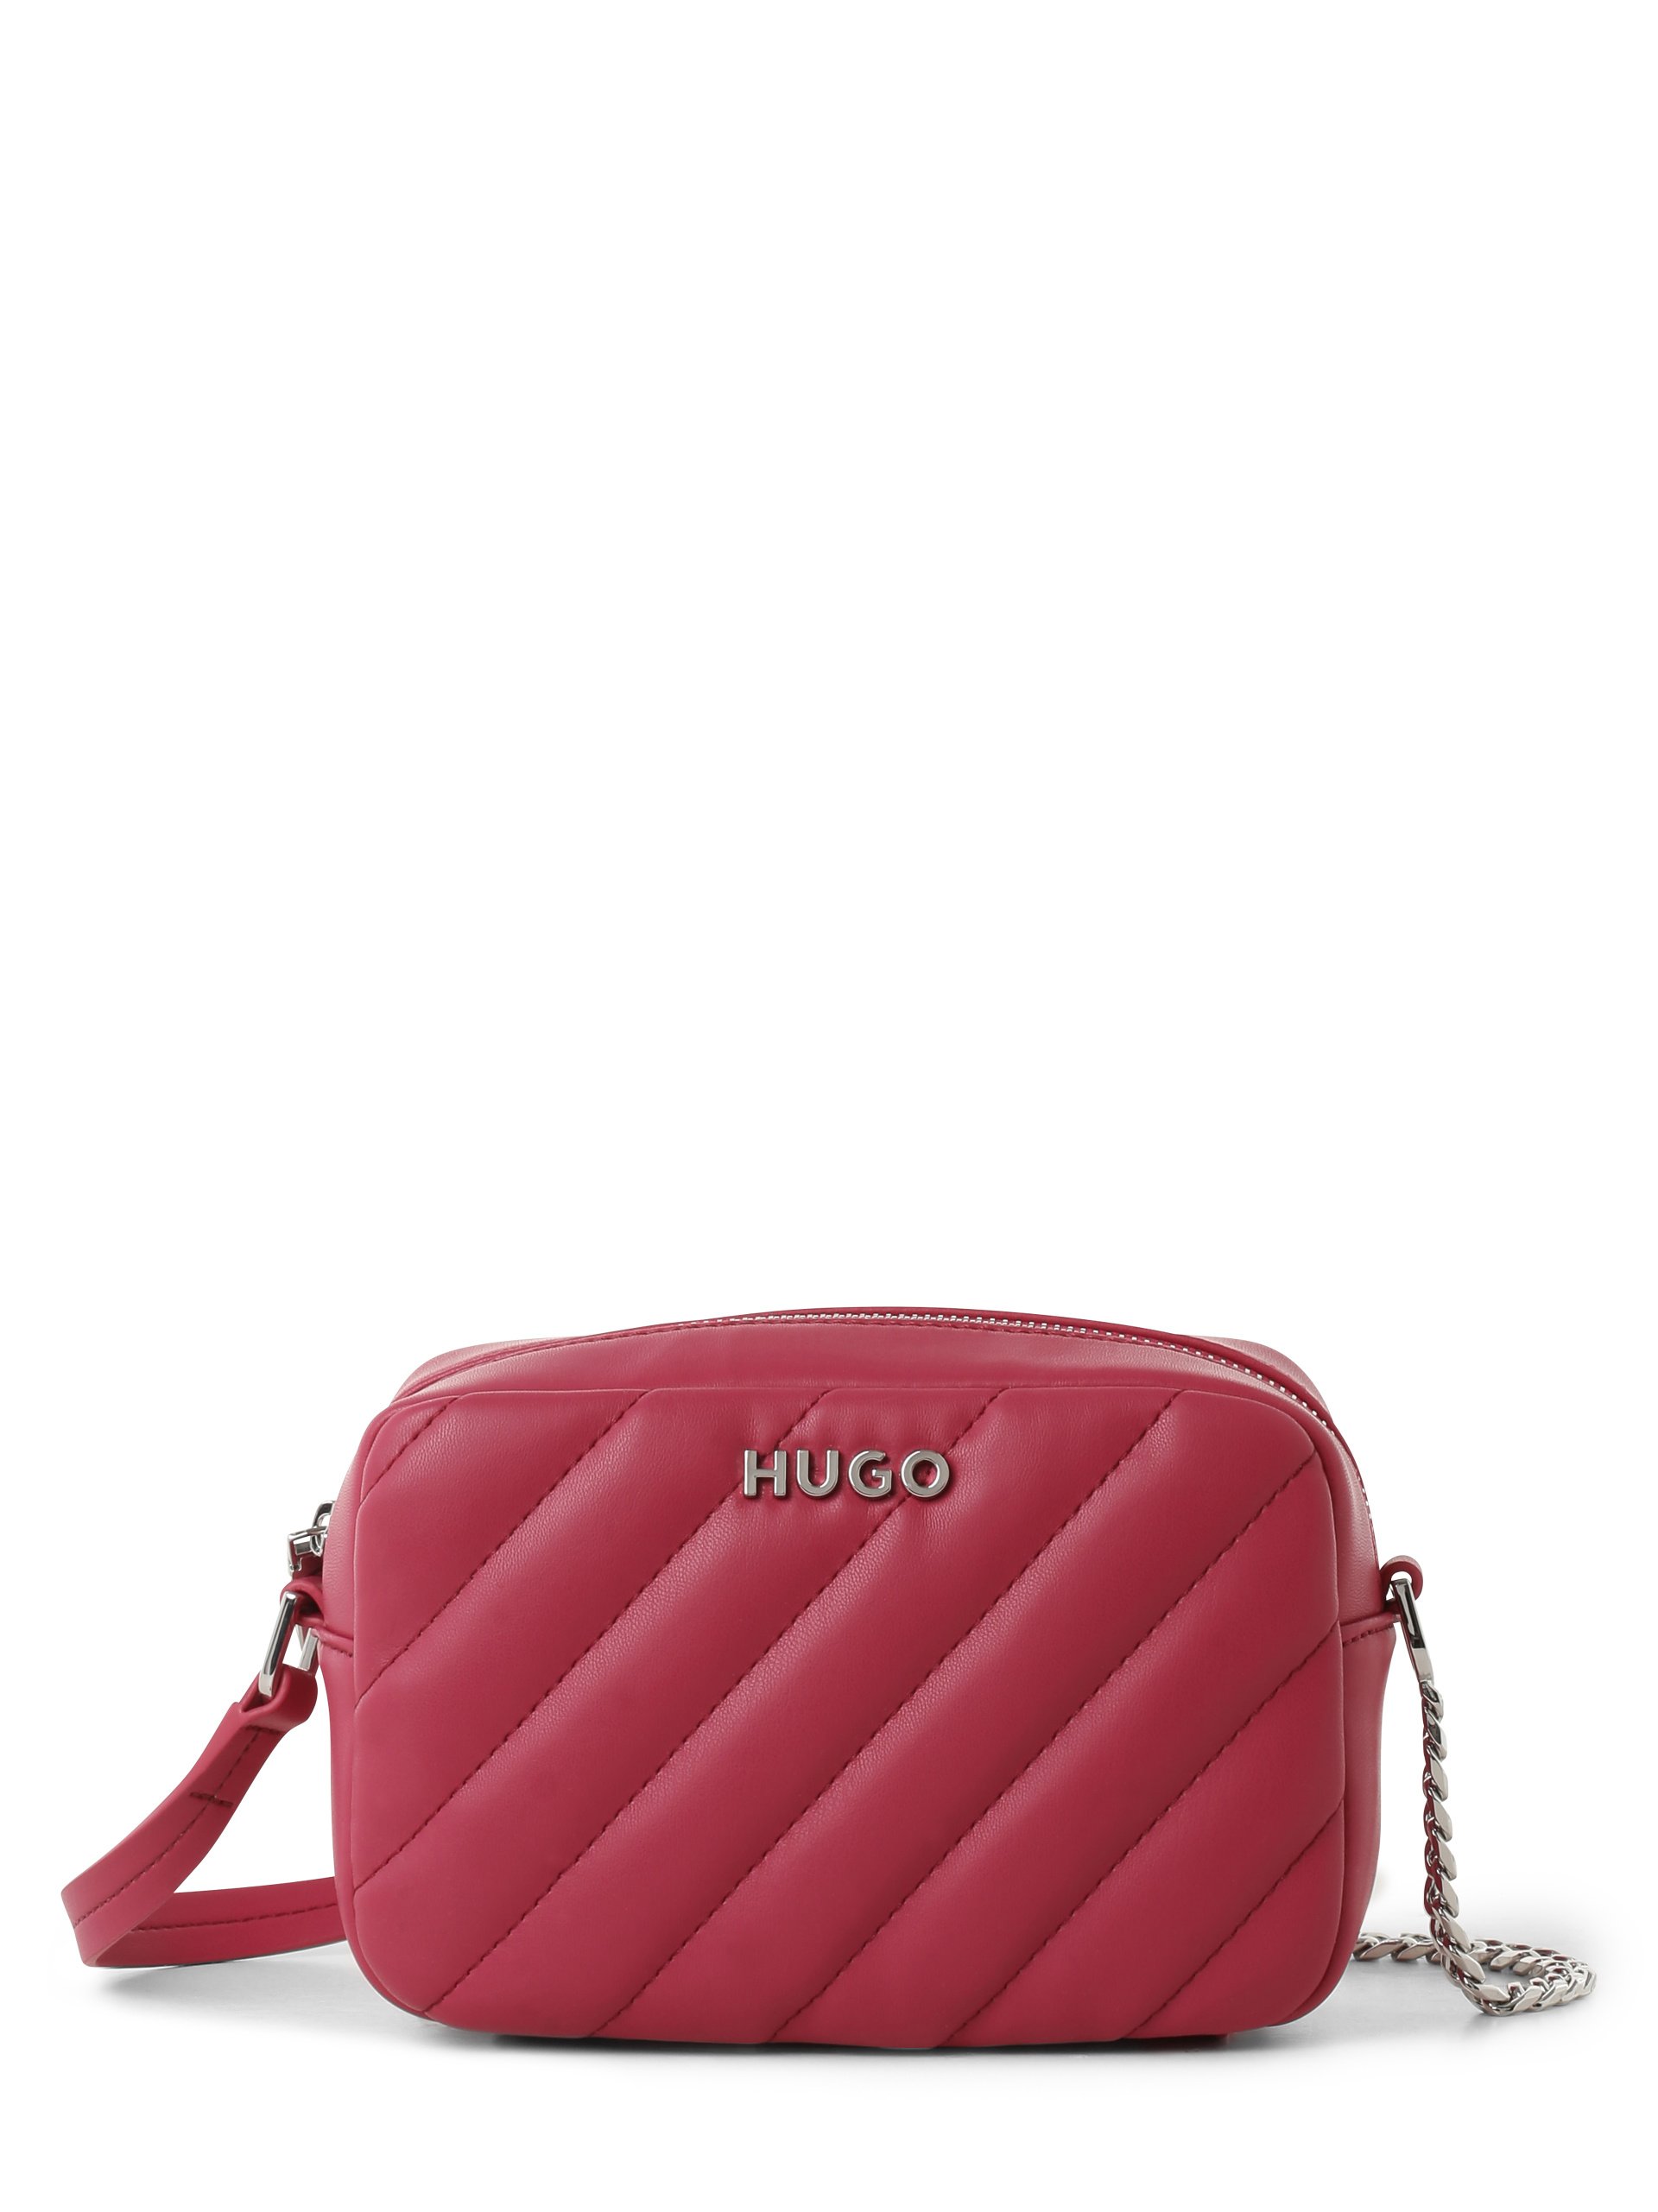 HUGO Damen - Handtasche online kaufen Lizzie